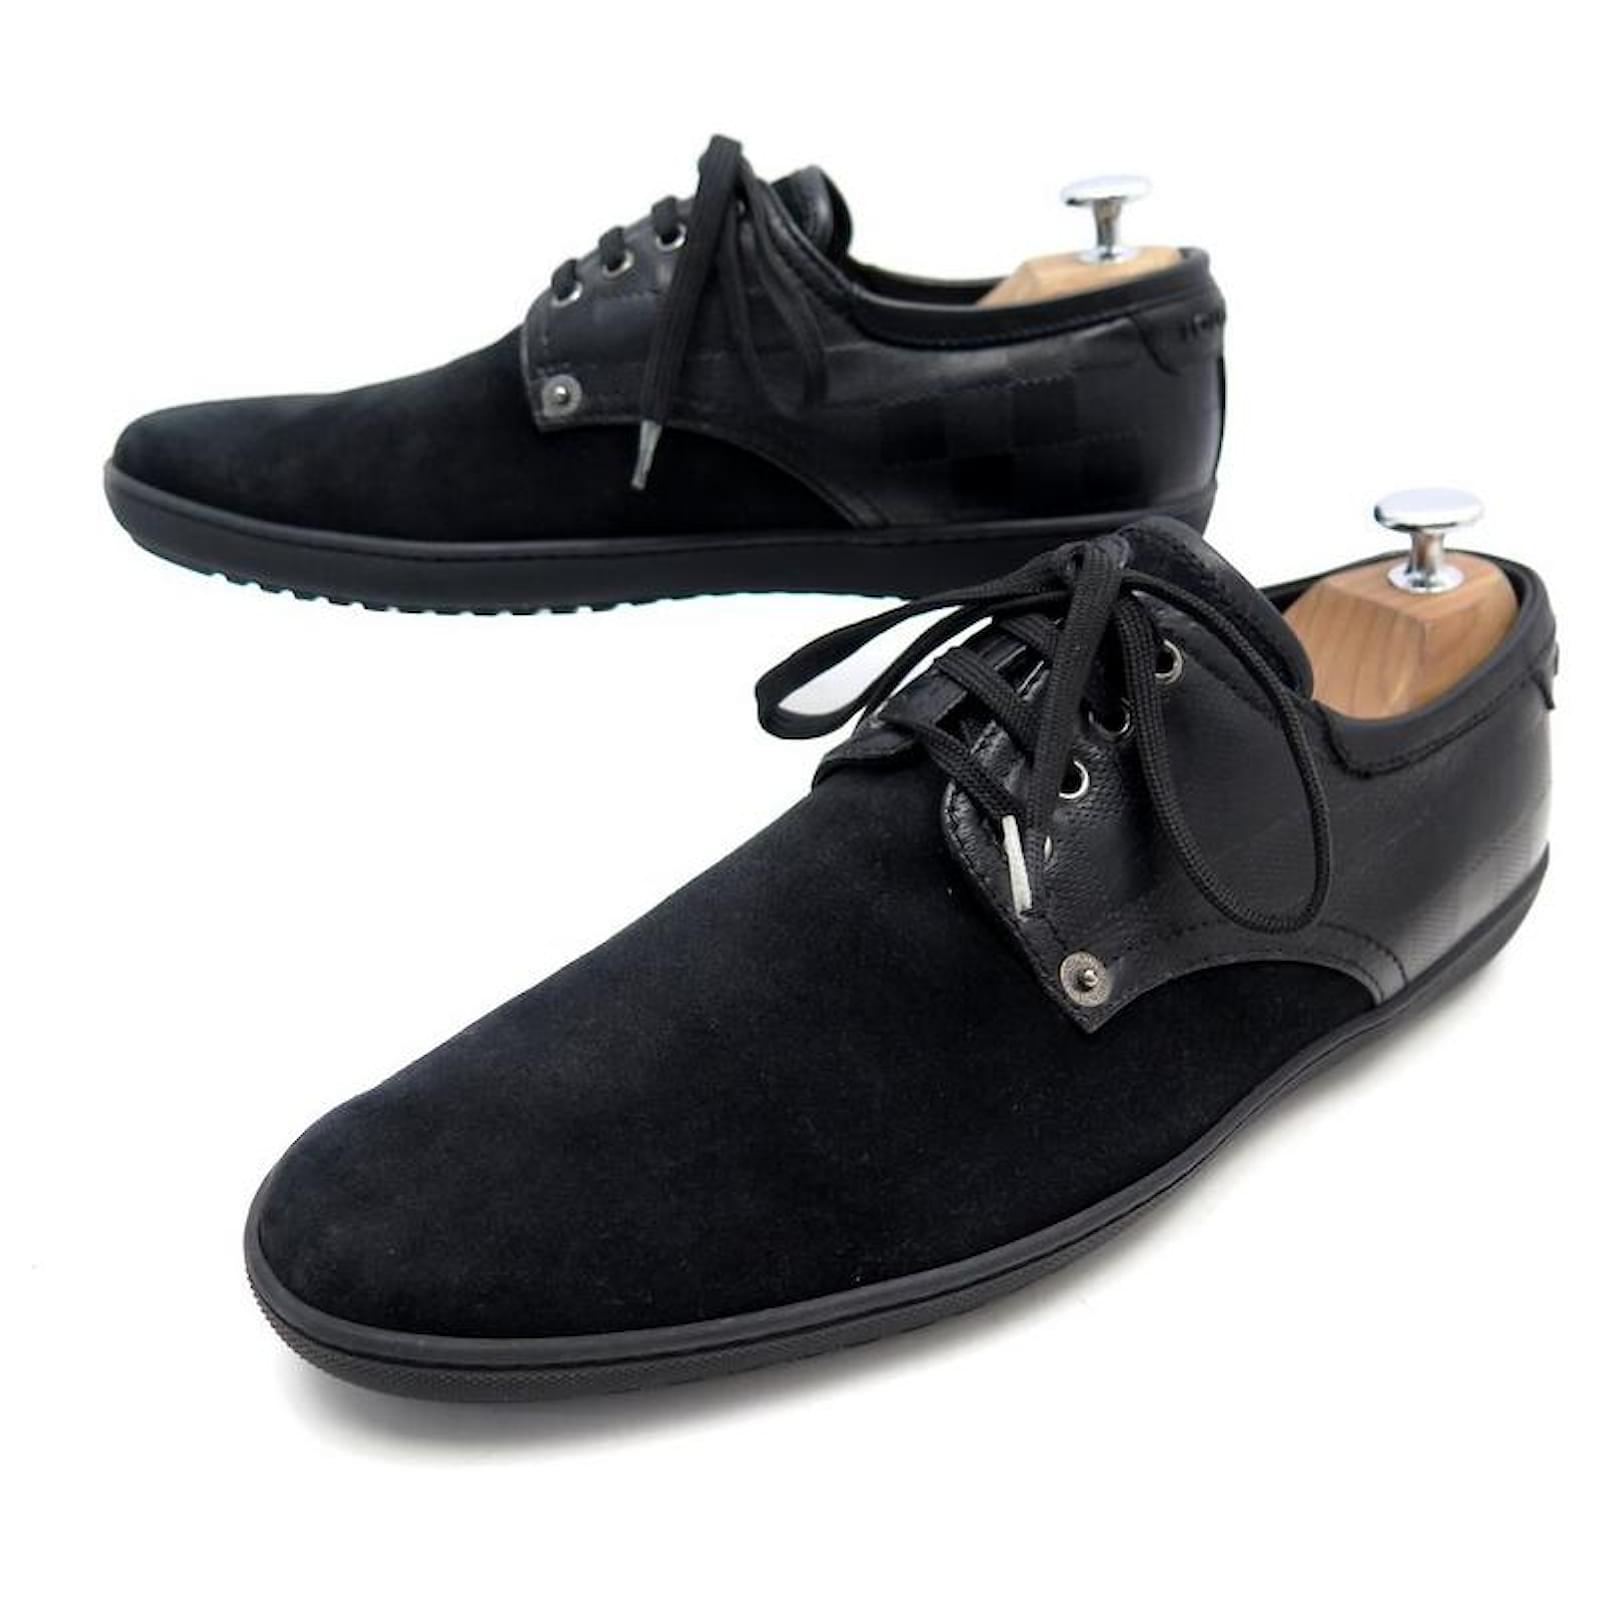 LOUIS VUITTON Mens Black Leather Derby Lace-Up Shoes - Size EU 41